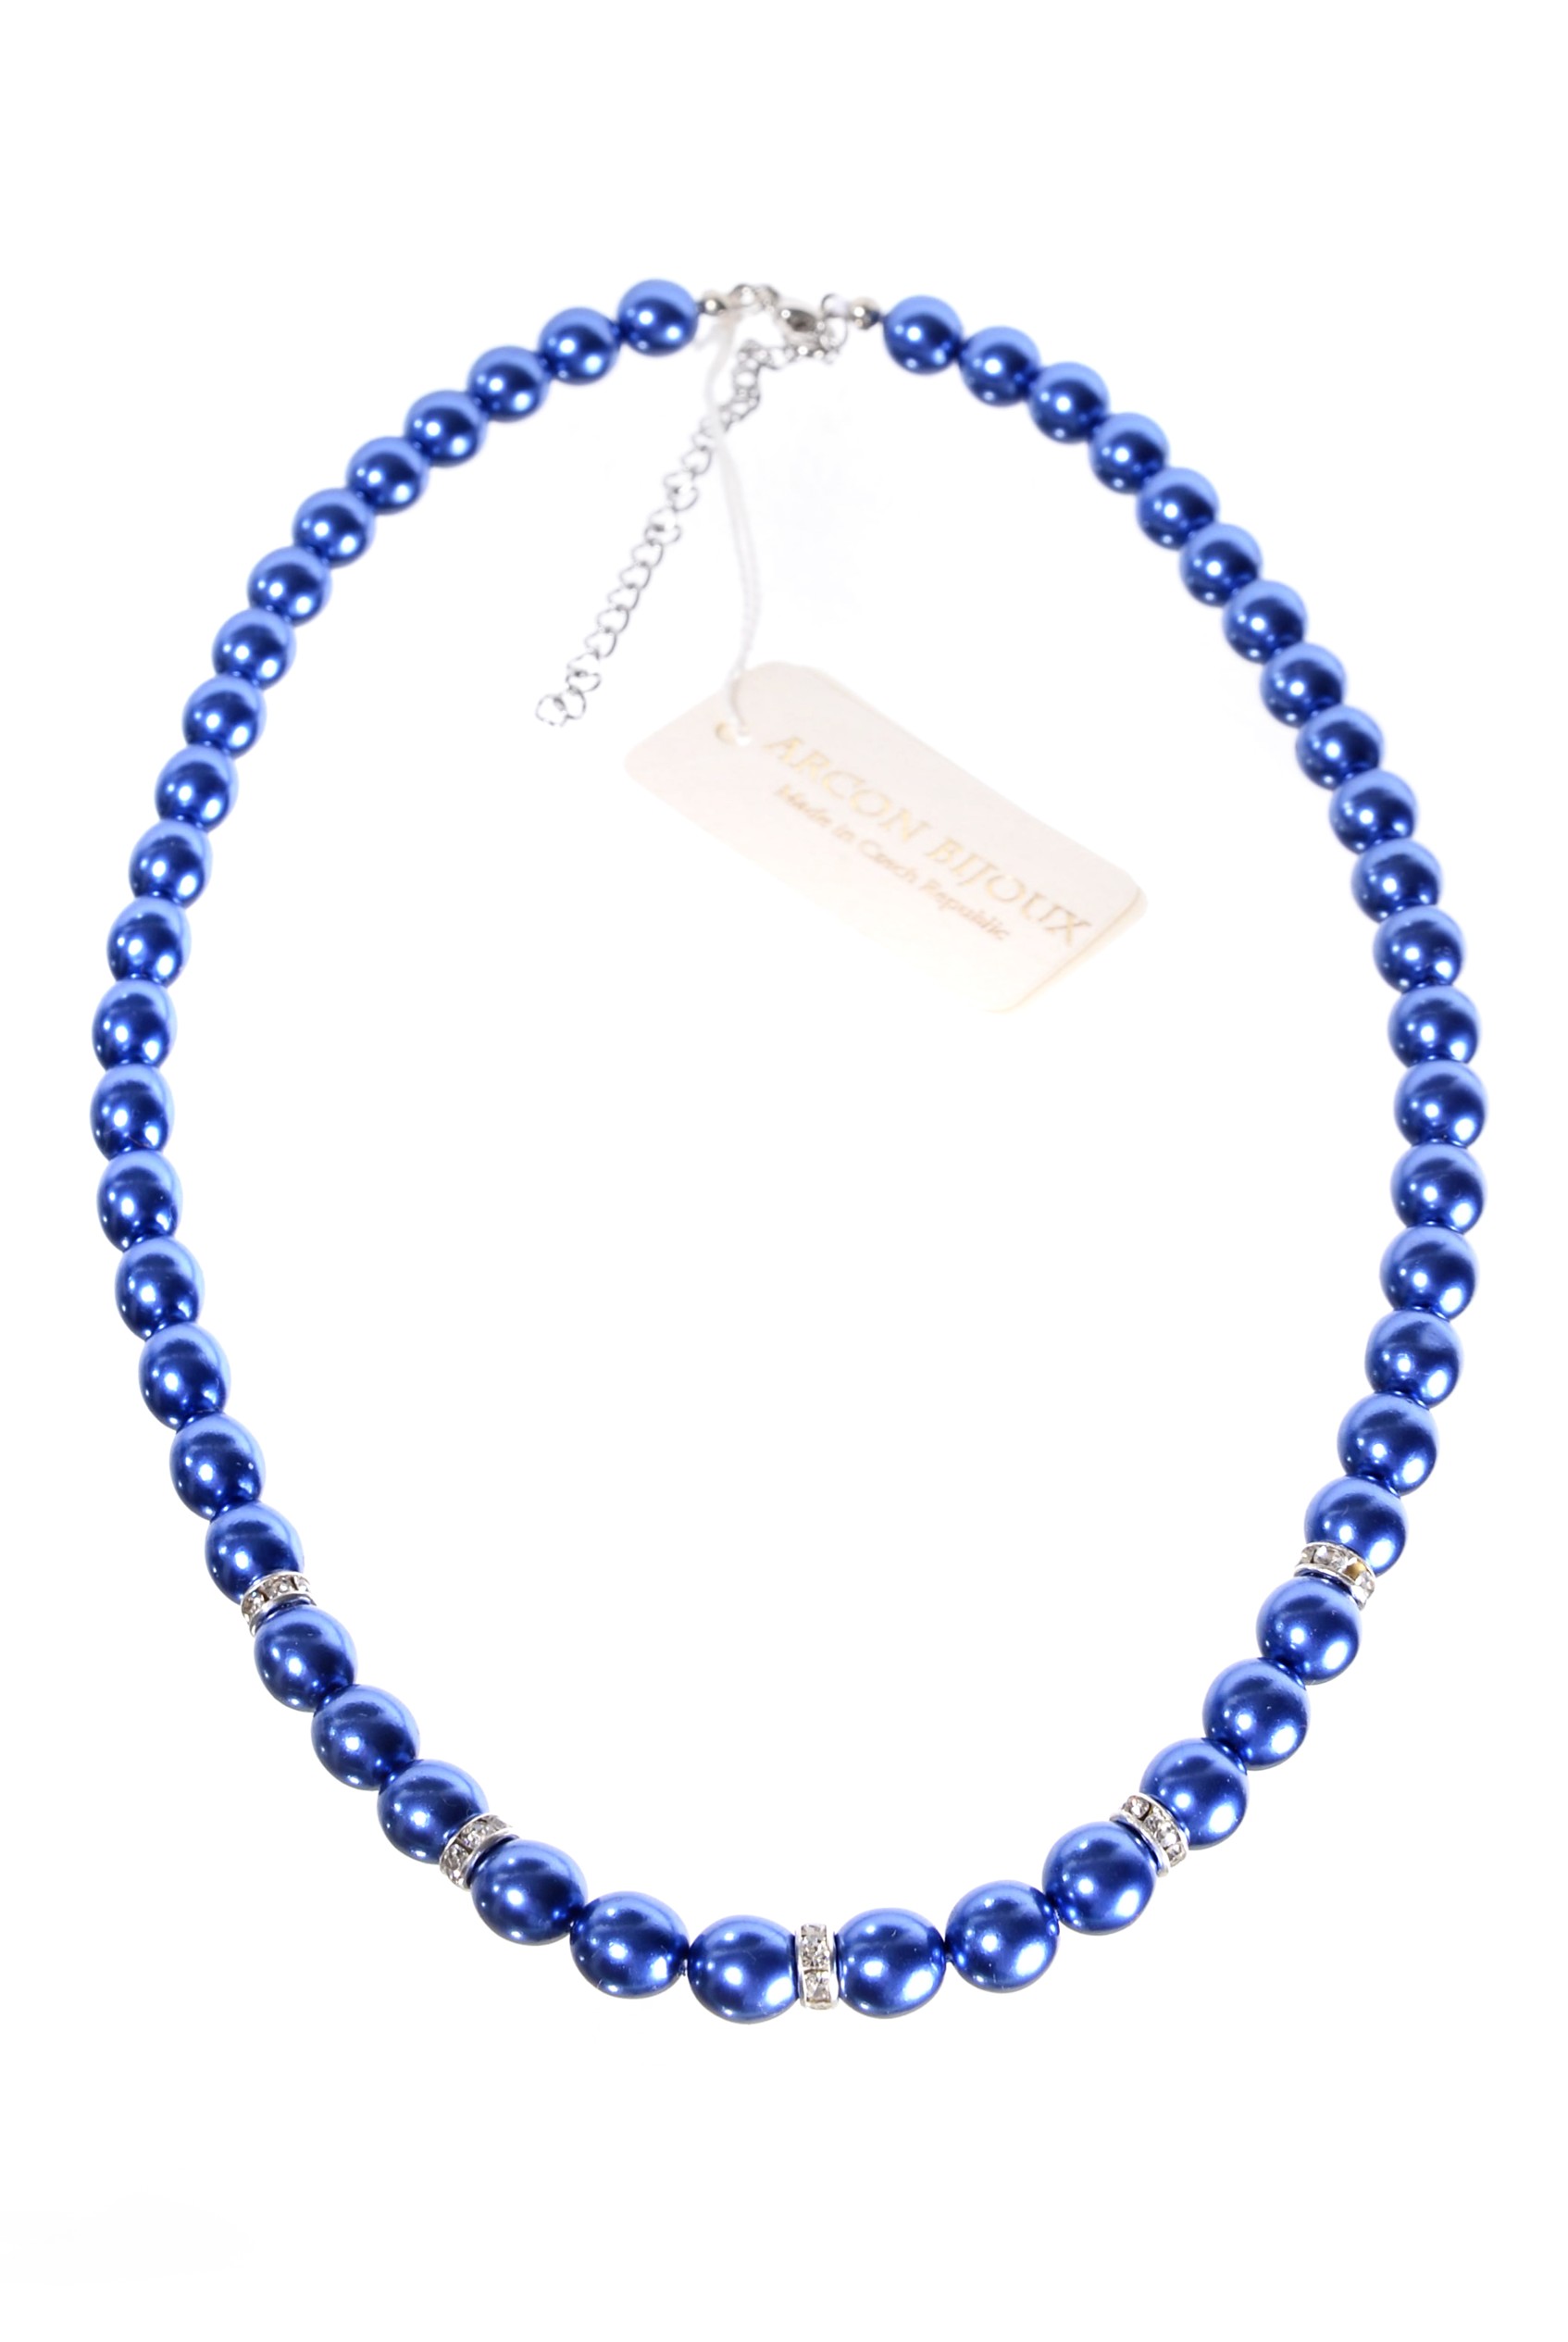 Modrý náhrdelník z perliček H93-209